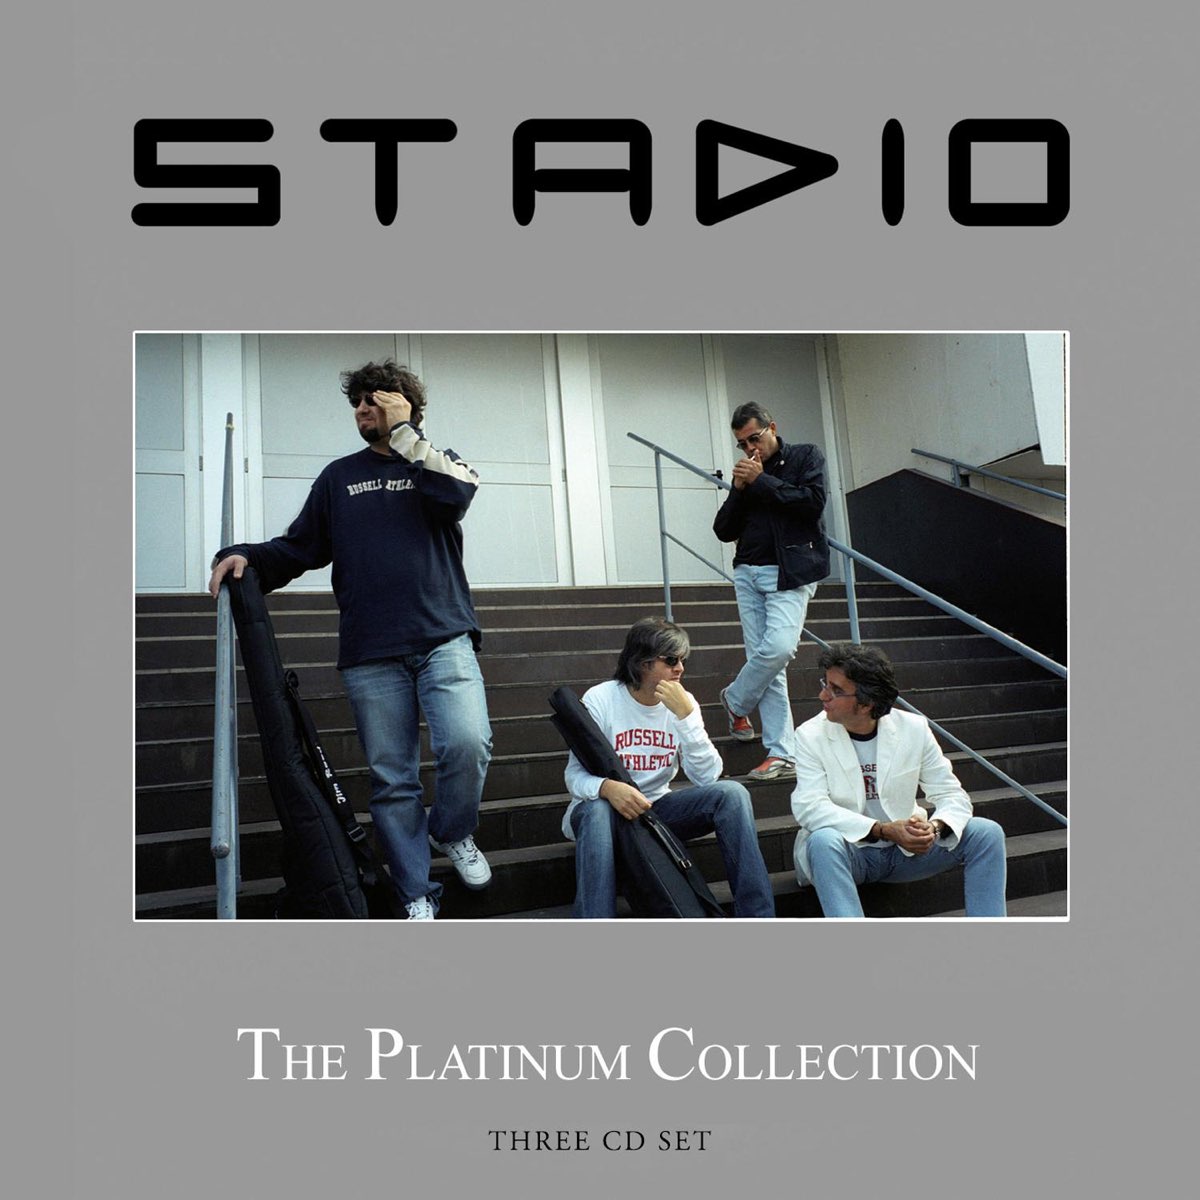 The Platinum Collection: Stadio - Album di Stadio - Apple Music